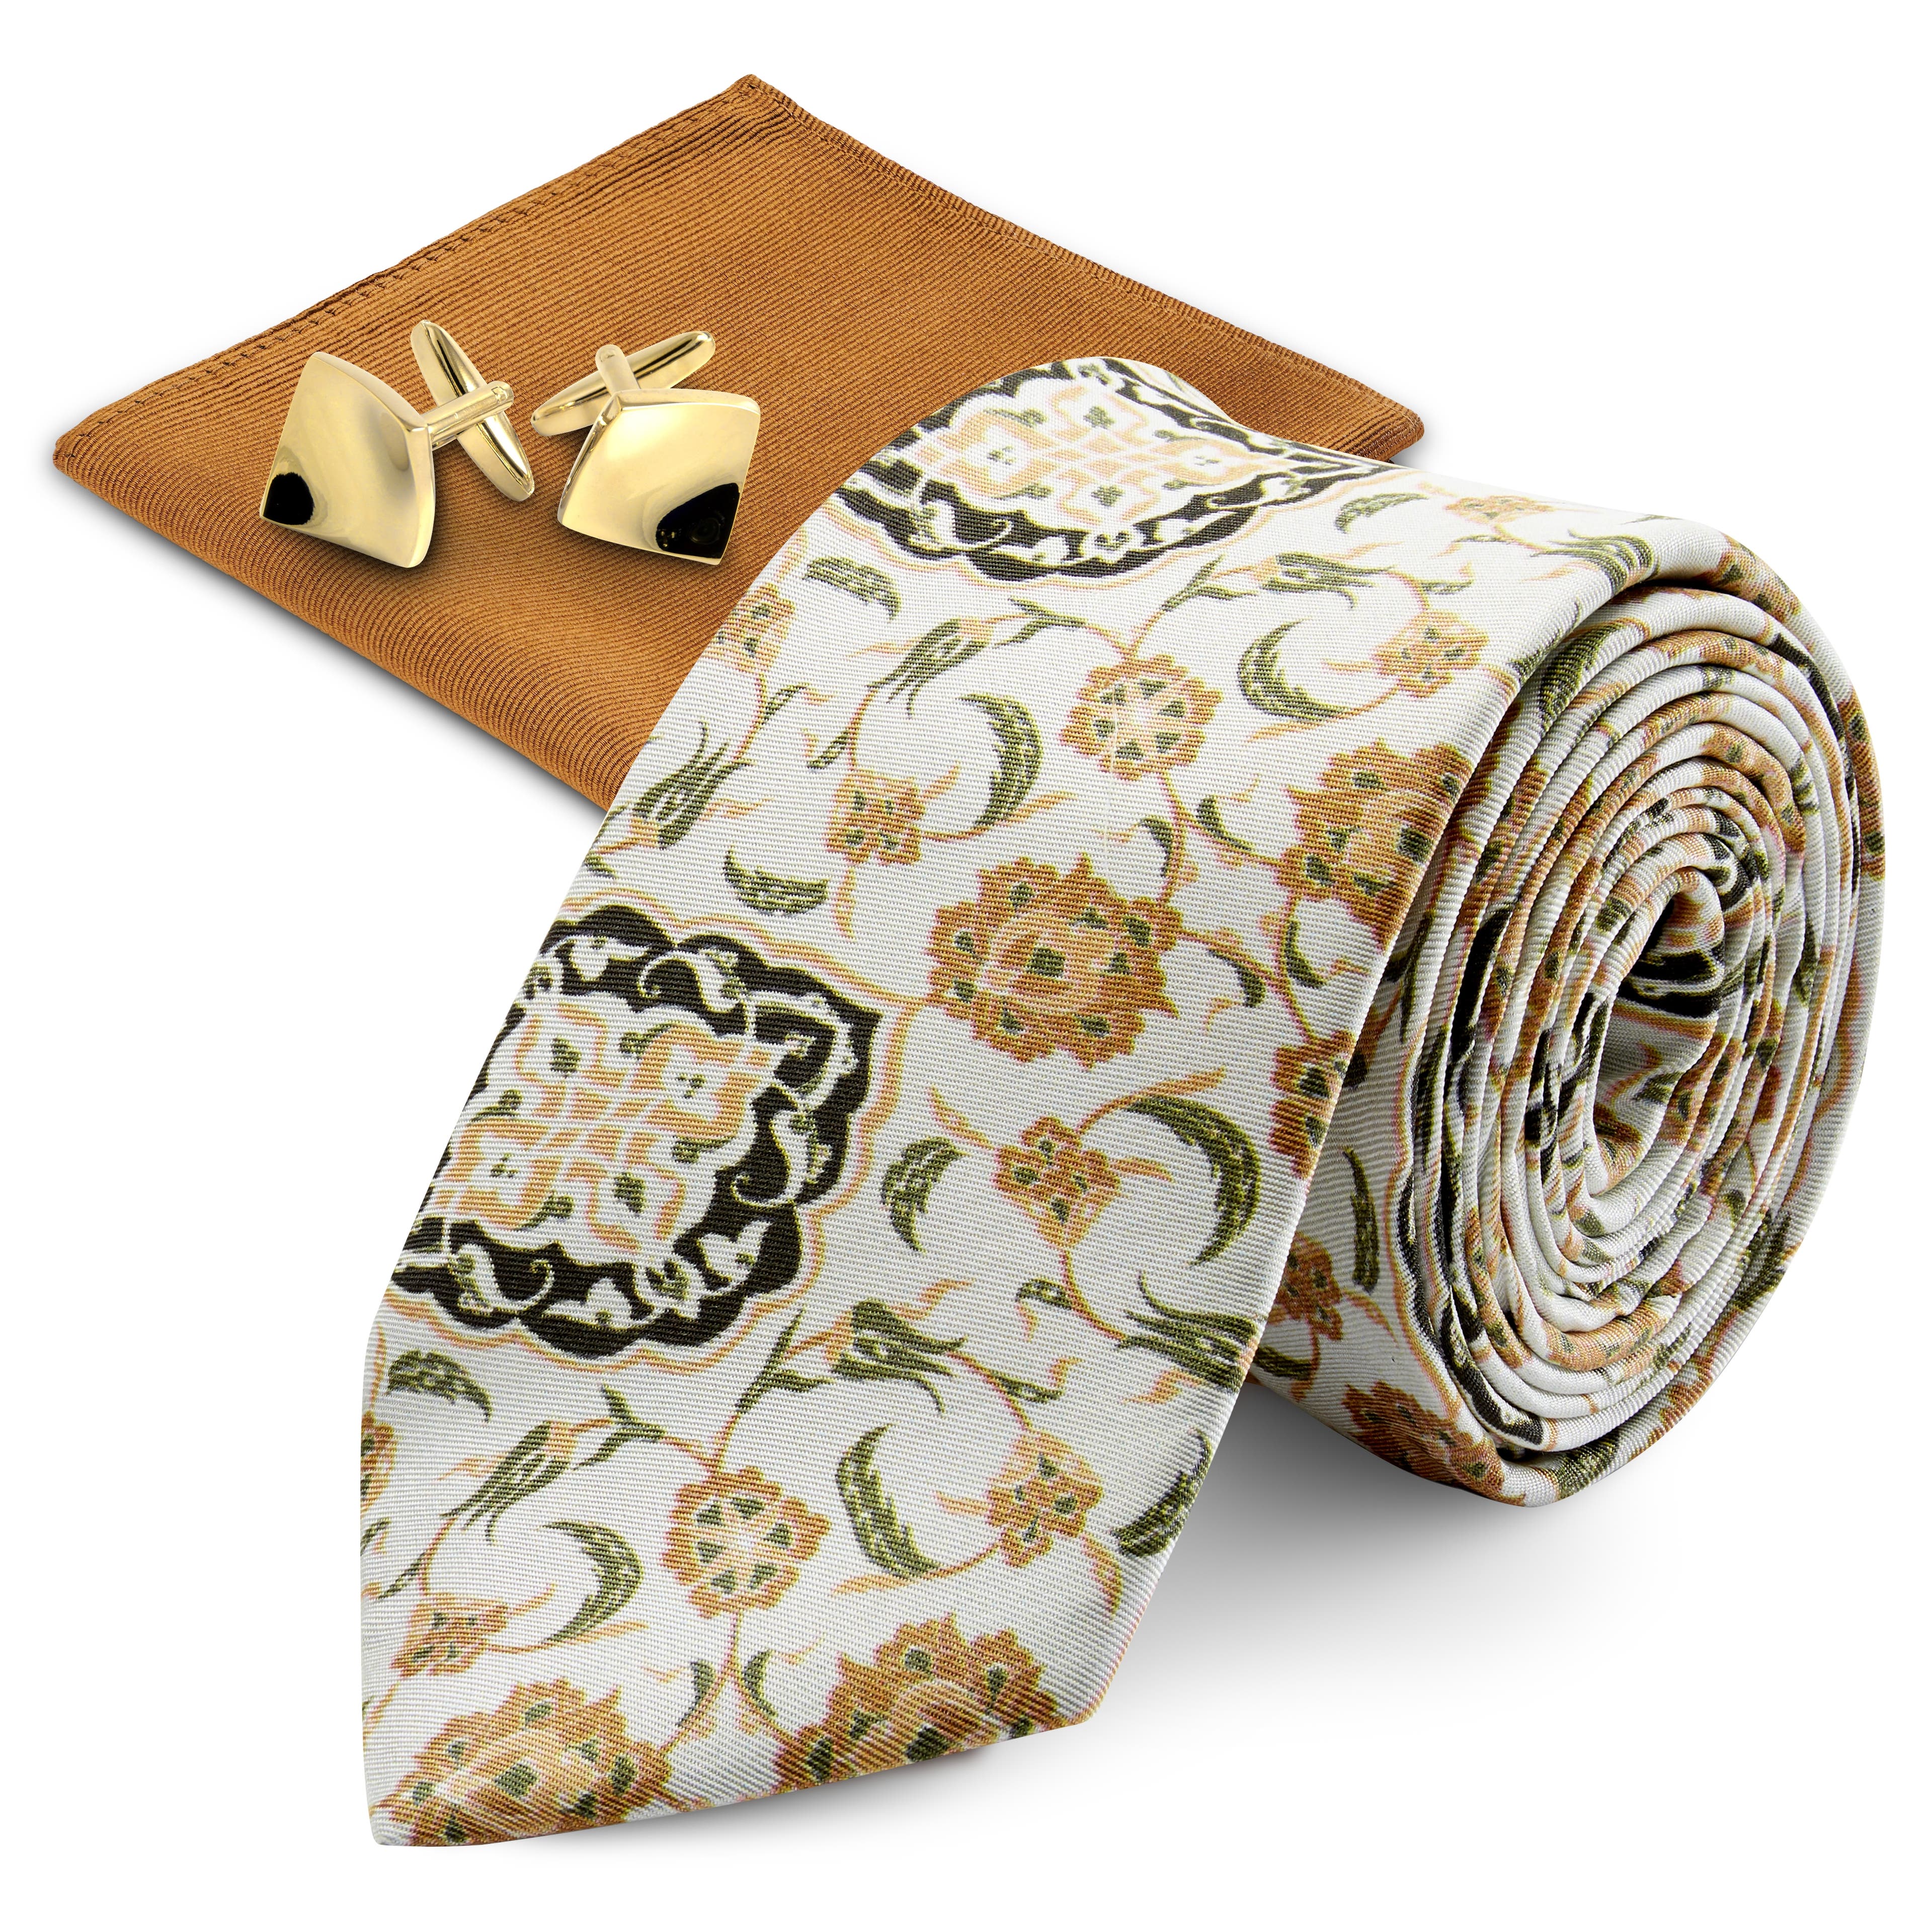 Set de accesorios para traje de seda en marrón y dorado